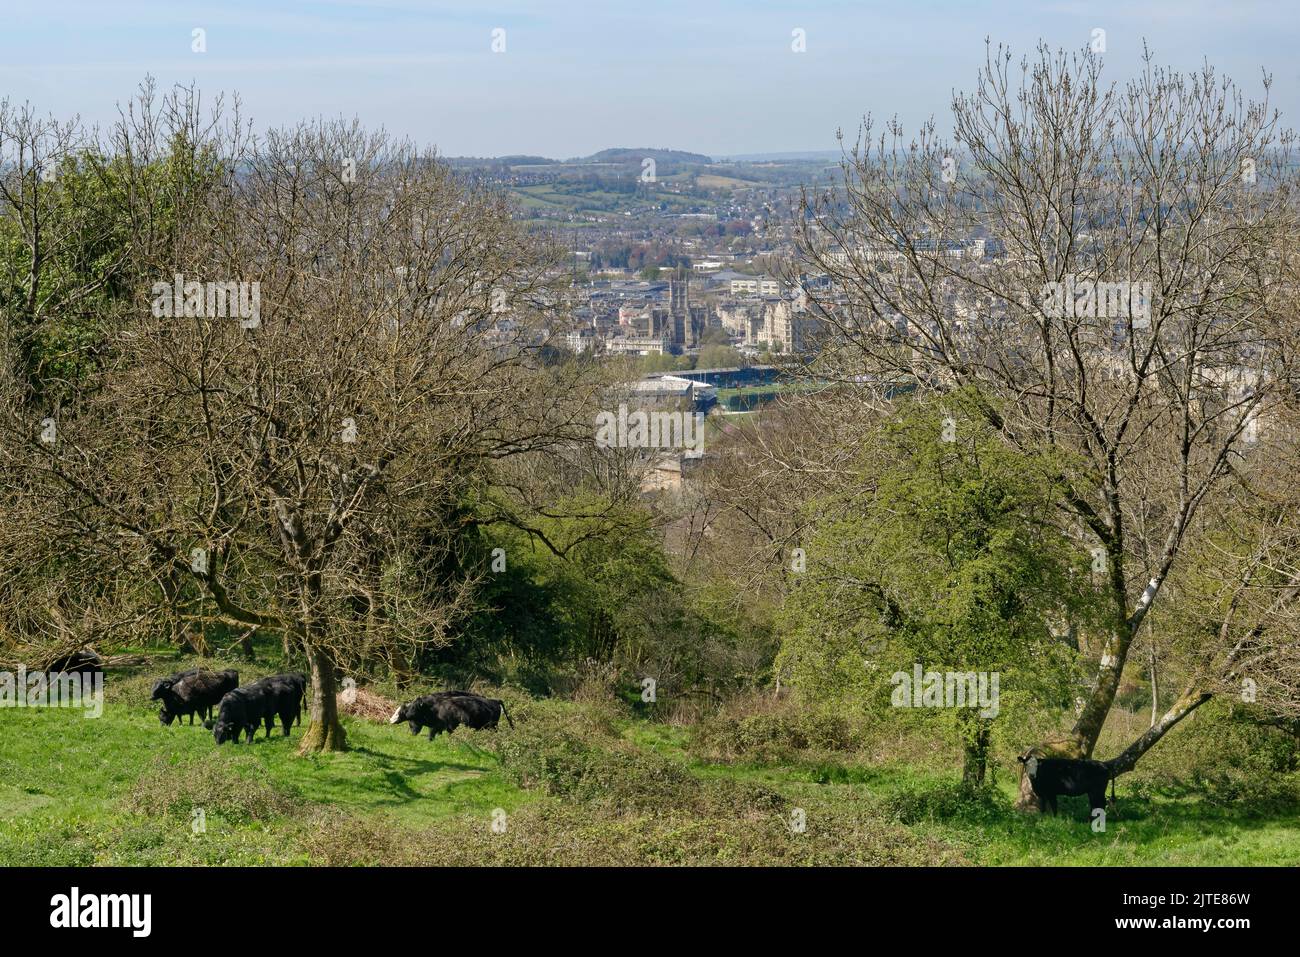 Vue d'ensemble de Bath City depuis la promenade de Bath Skyline près de Bathwick, avec Cattle (Bos taurus) en premier plan, Bath et le nord-est du Somerset, Royaume-Uni, avril Banque D'Images